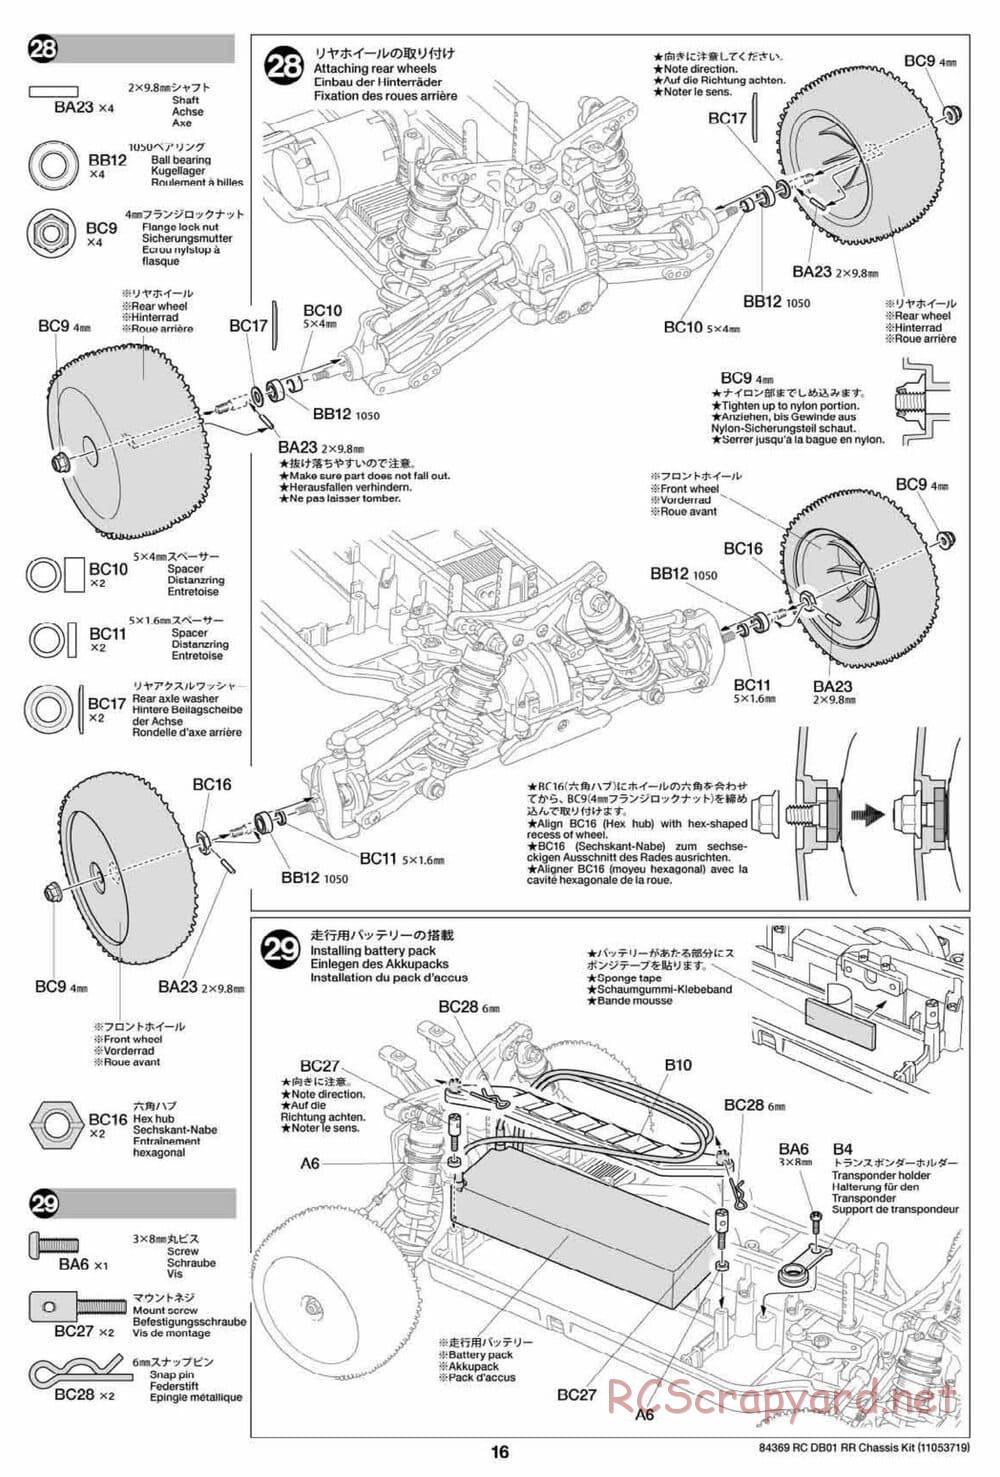 Tamiya - DB-01 RR Chassis - Manual - Page 16